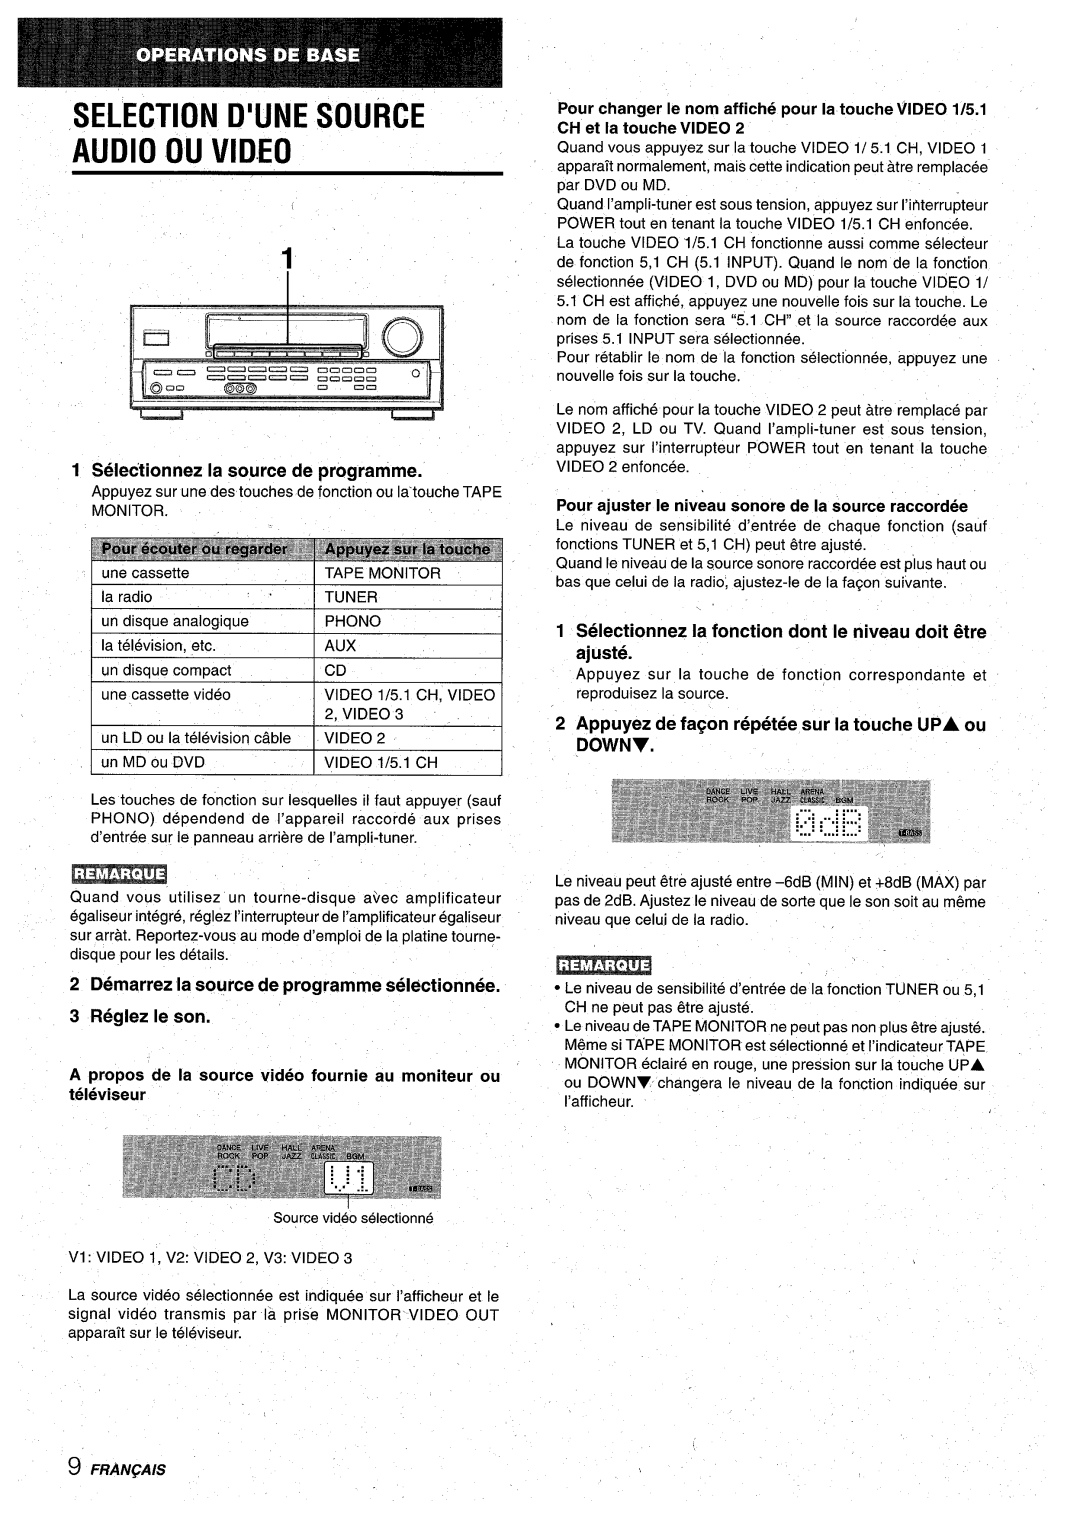 Aiwa AV-D30 manual Selection D’Une Source Audio Ou Video, Selectionnez la so,urce de programme, Reglez Ie son, Fran~Ais 